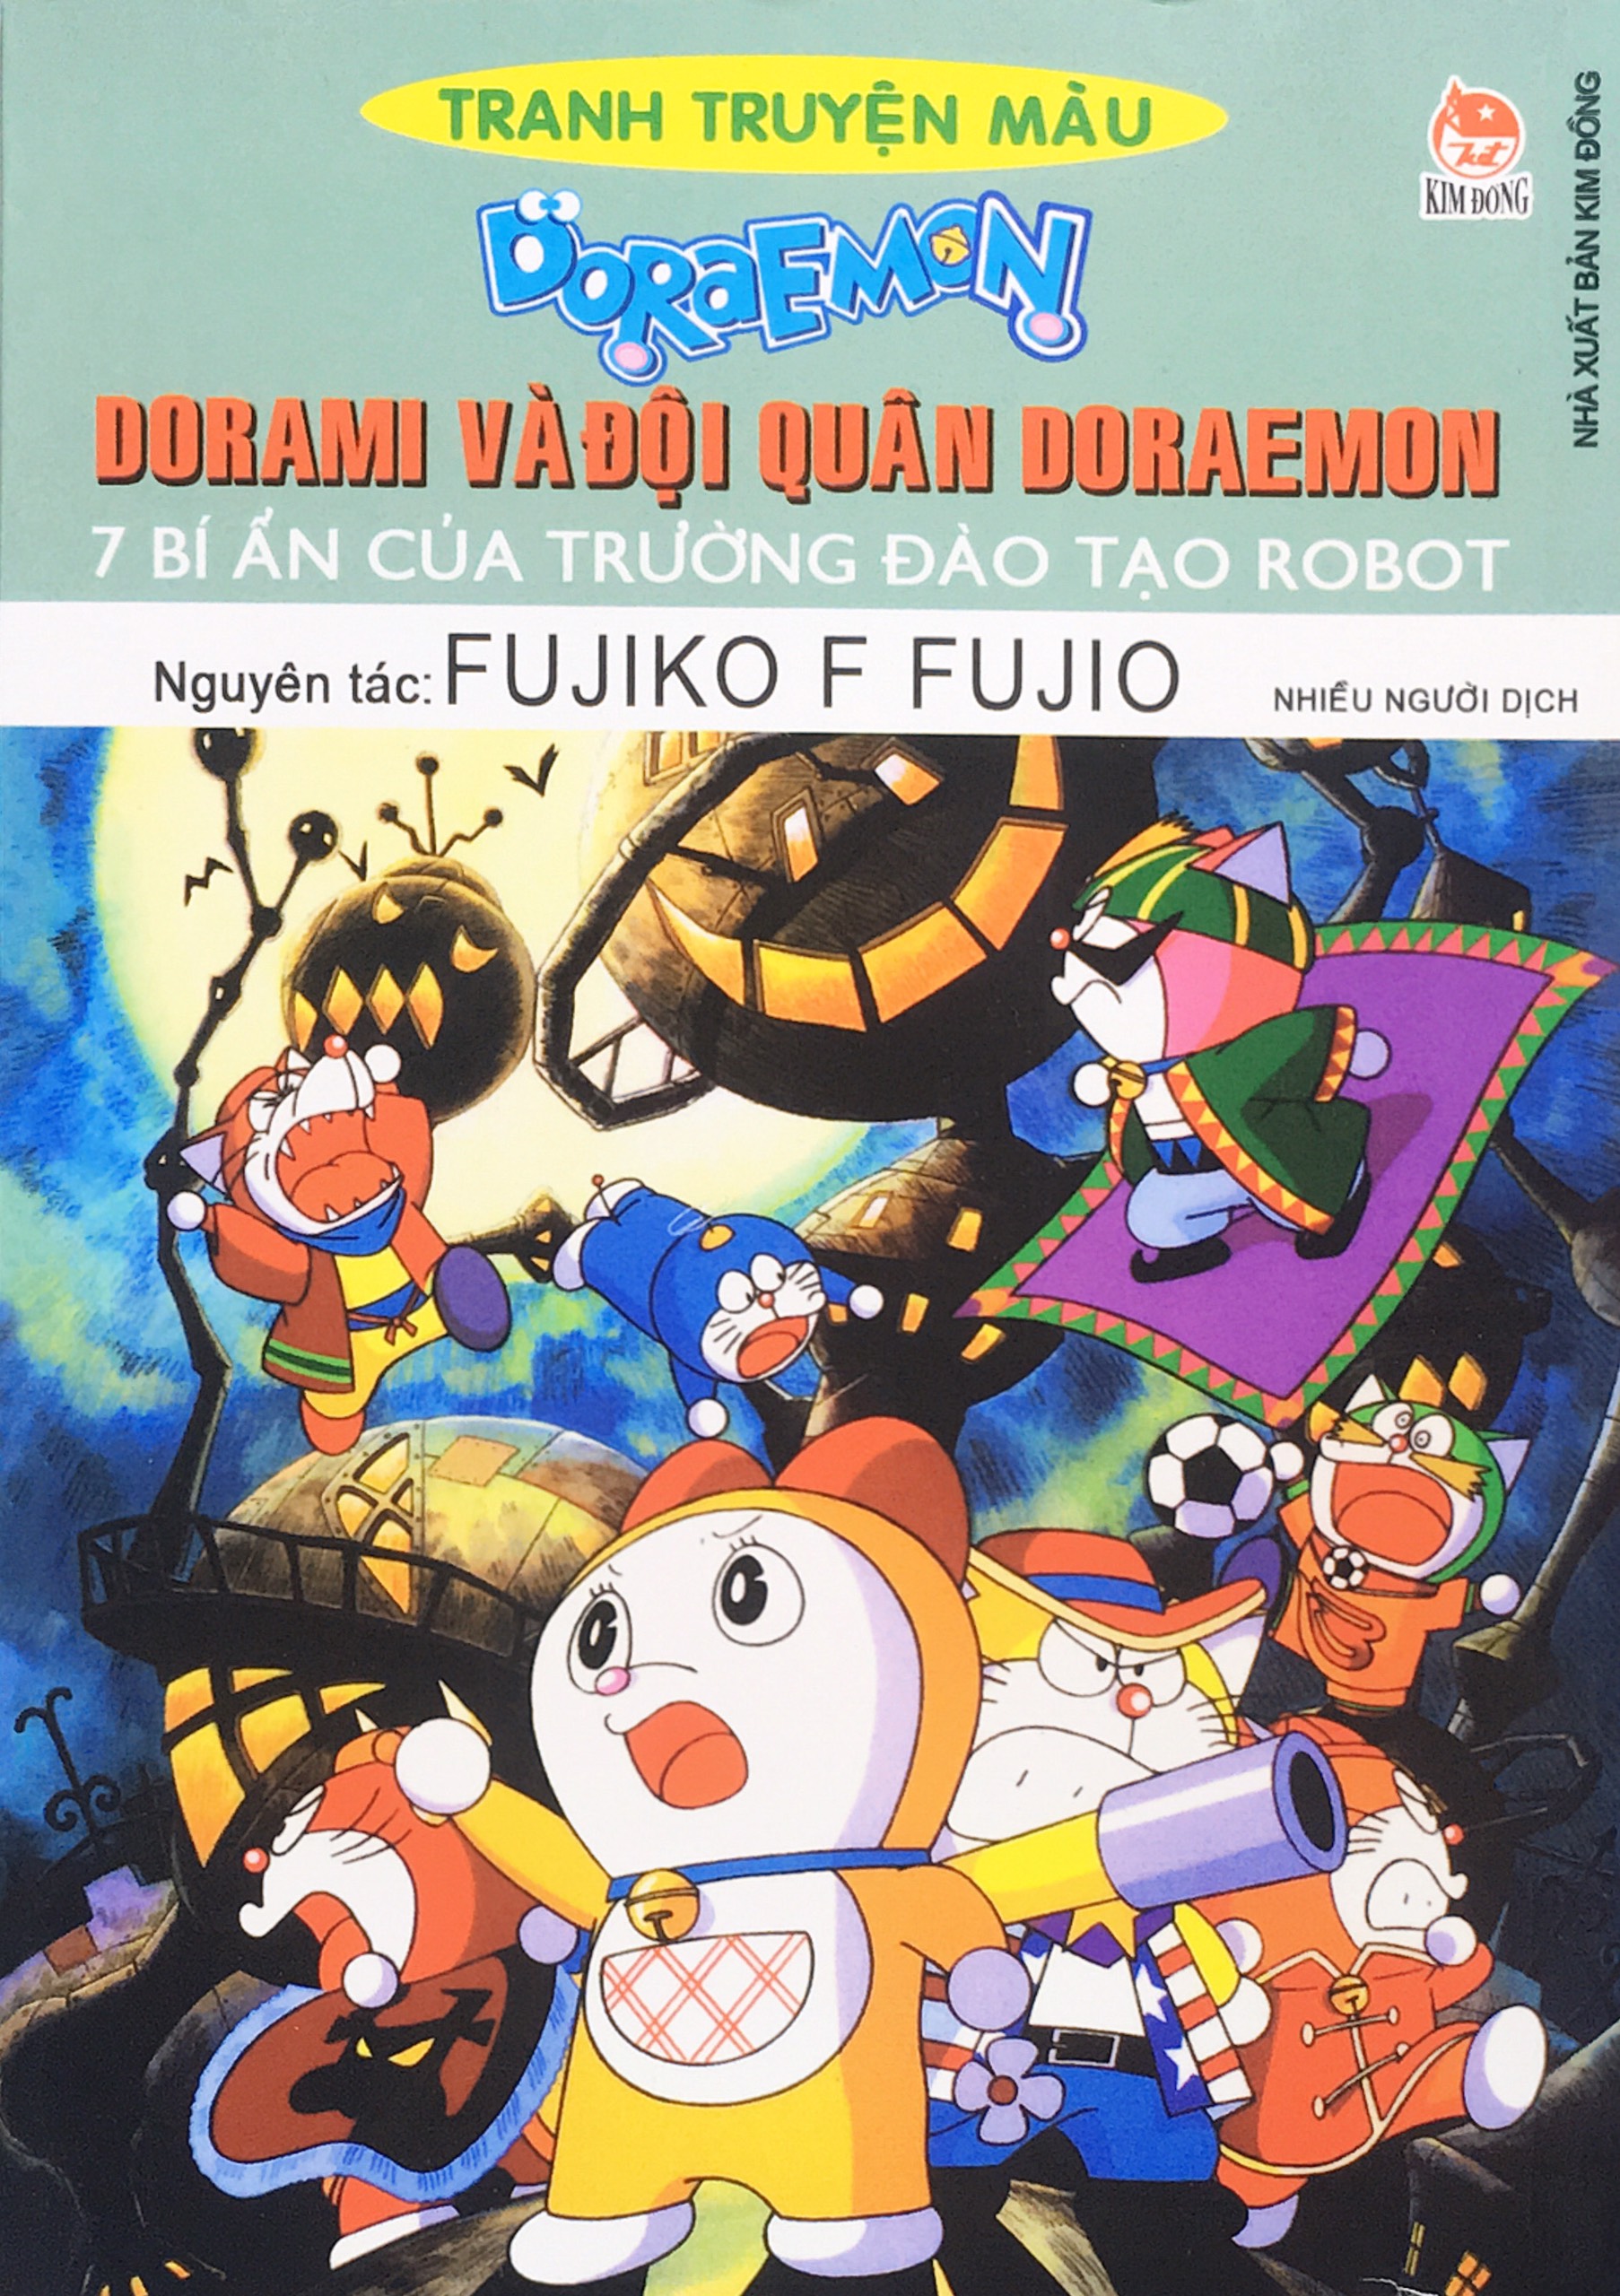 Kim Đồng - Doraemon tranh truyện màu: Xem tranh truyện màu đầy ấn tượng của Kim Đồng và những phiên bản Doraemon yêu thích của bạn. Và nếu bạn đã từng là một fan hâm mộ của bộ truyện tranh này, chắc chắn bạn sẽ thích thú khi được xem lại các trang truyện màu yêu thích của mình.